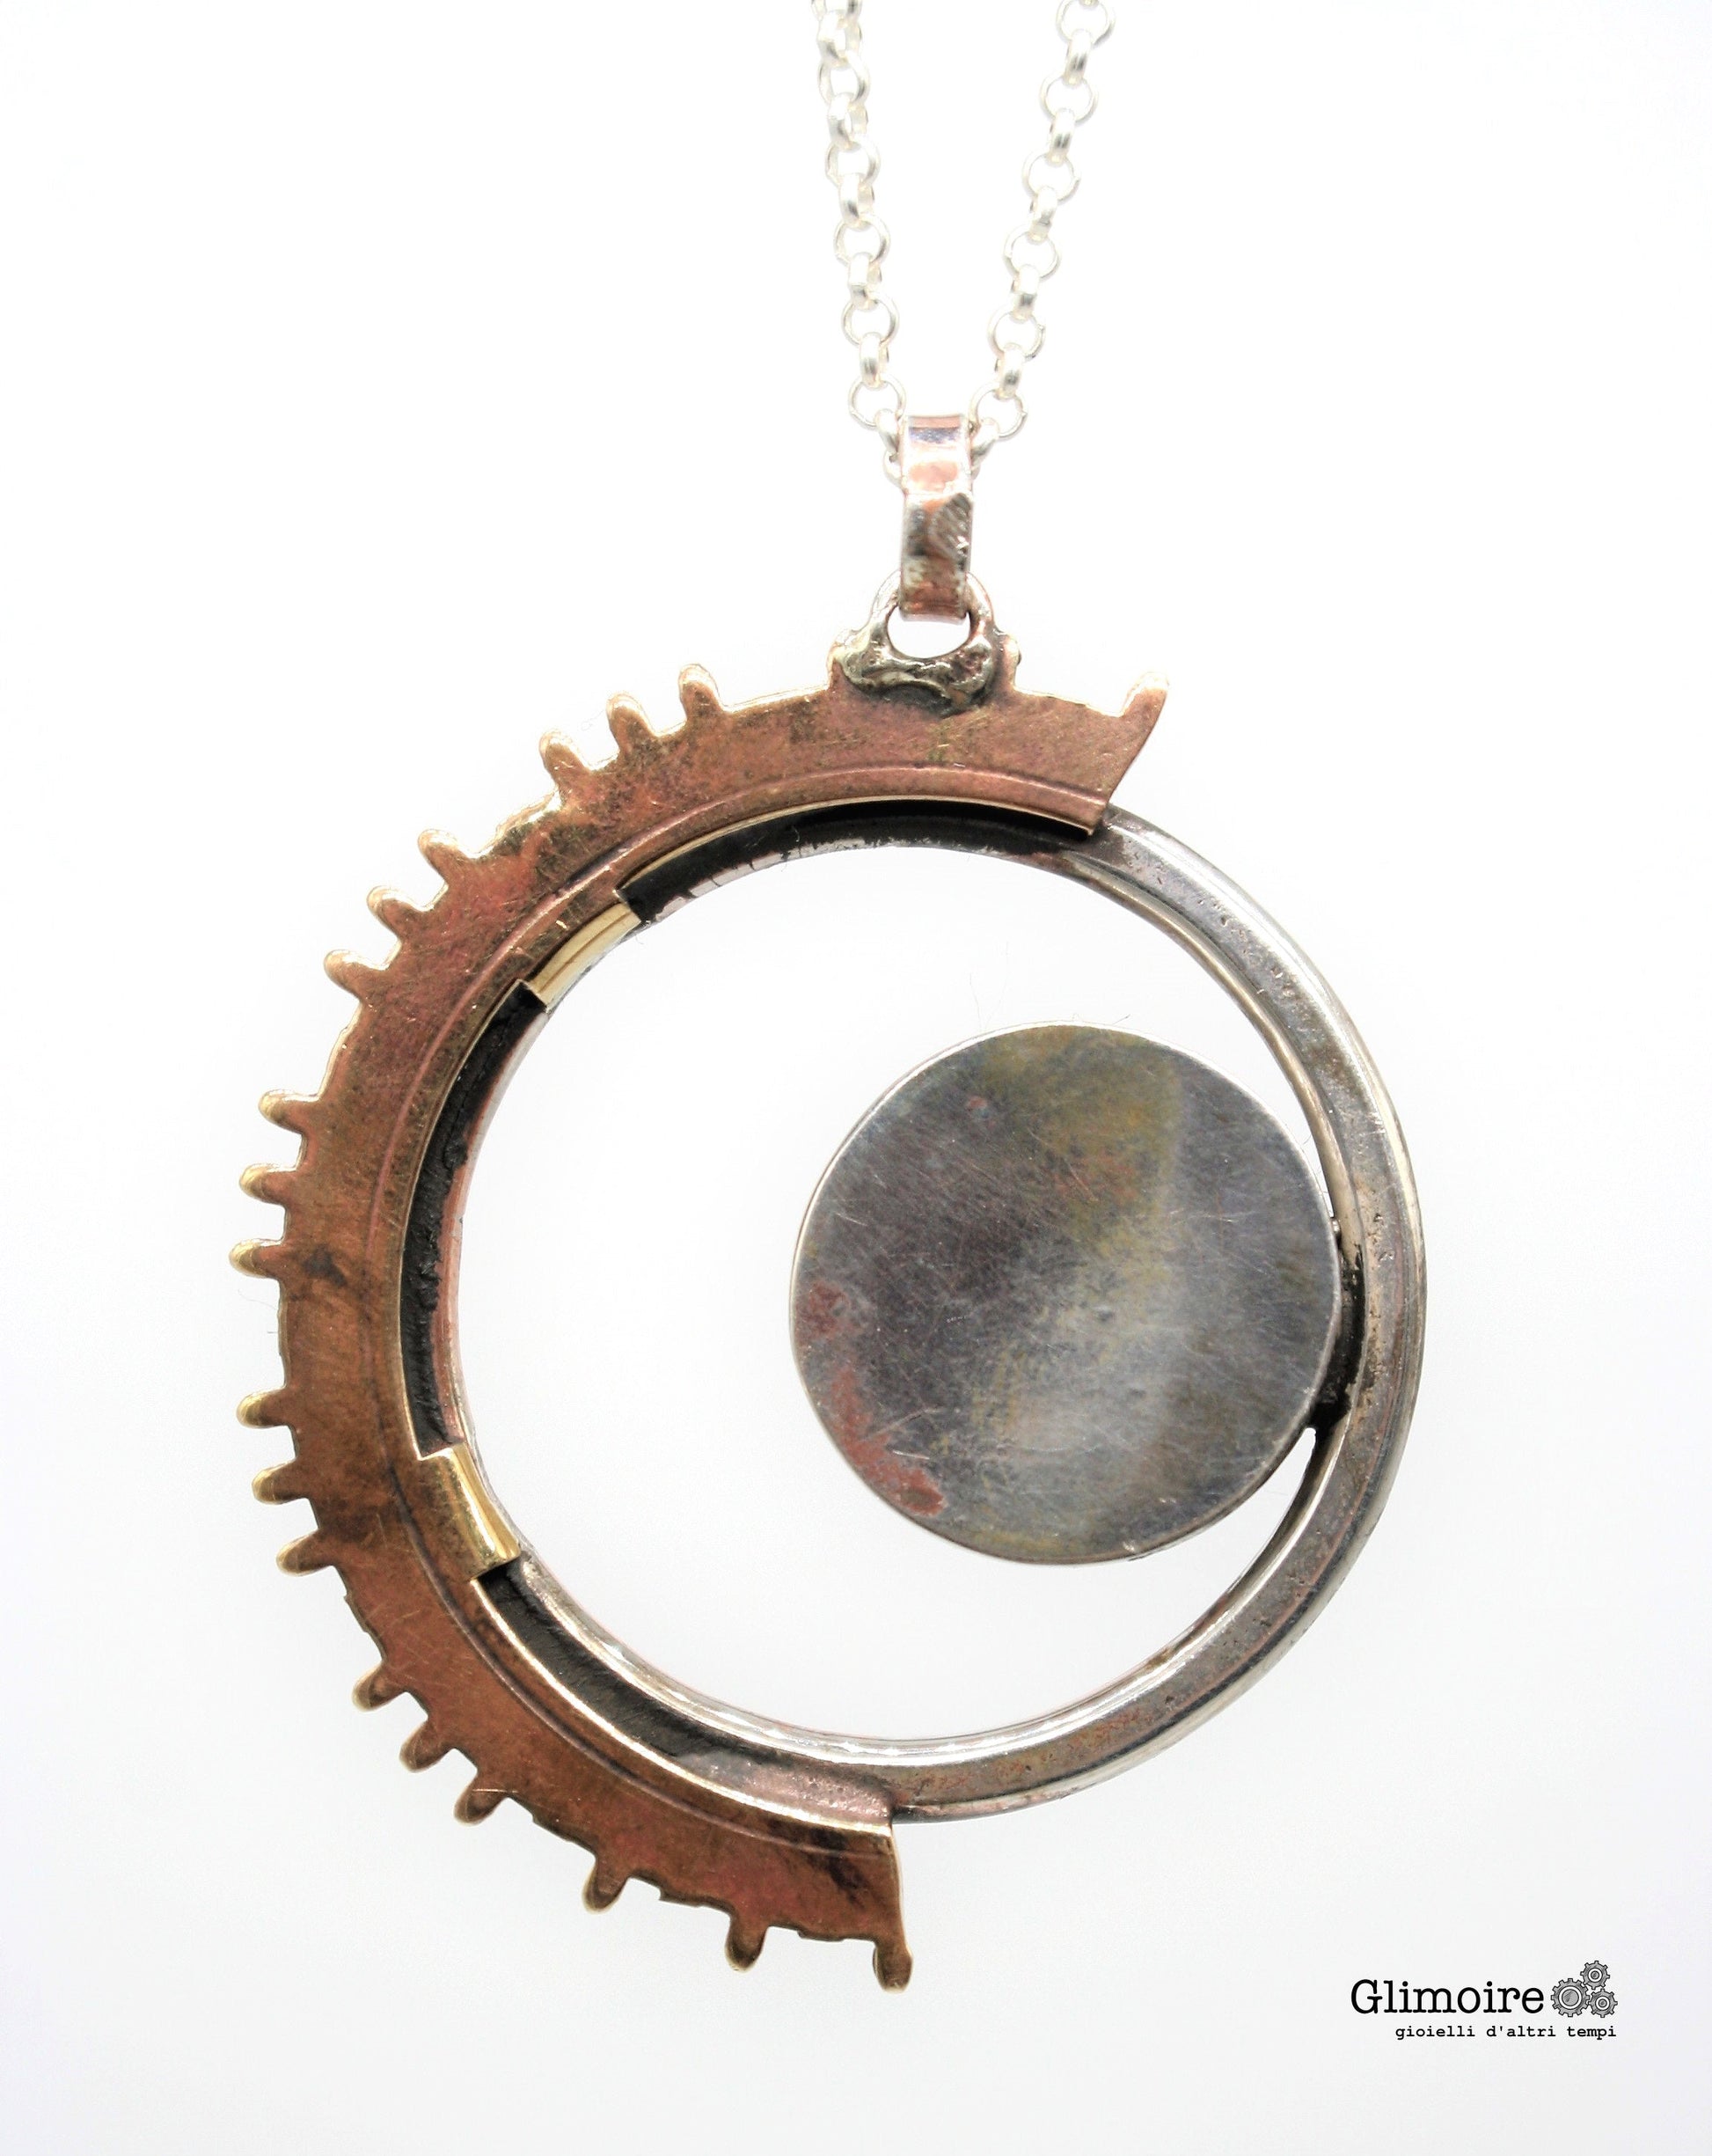 Eclissi - Medaglione con cerchio battuto e meccanismo d'orologio d'epoca e ingranaggio di orologio a pendolo art.295 - Glimoire